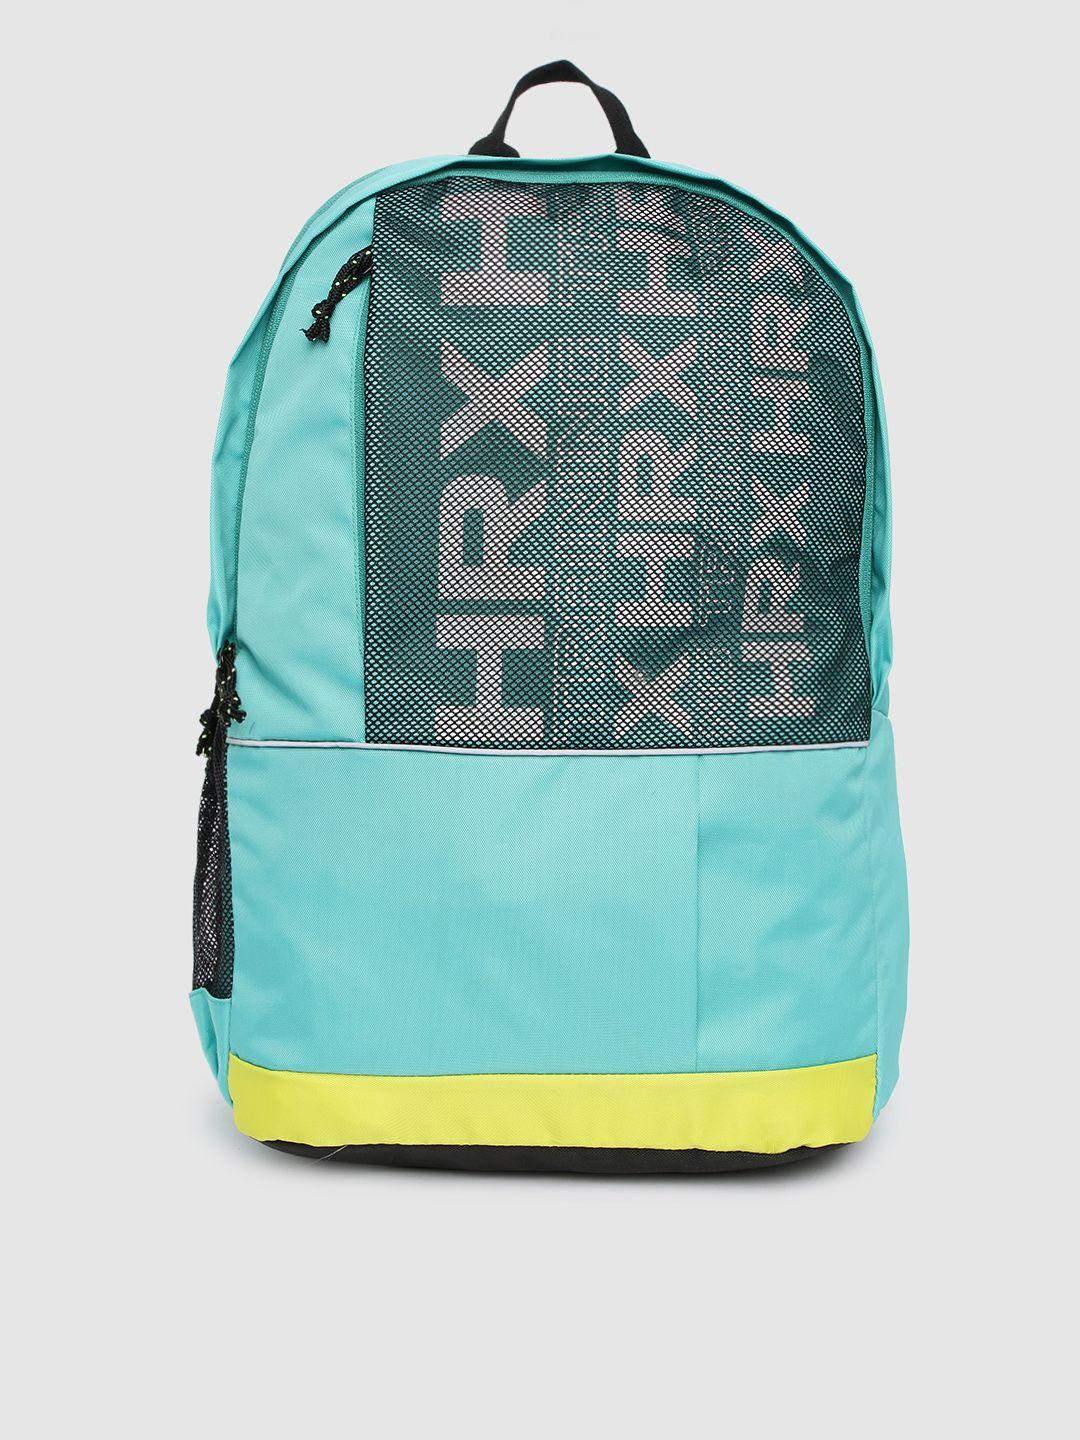 hrx by hrithik roshan unisex teal brand logo backpack